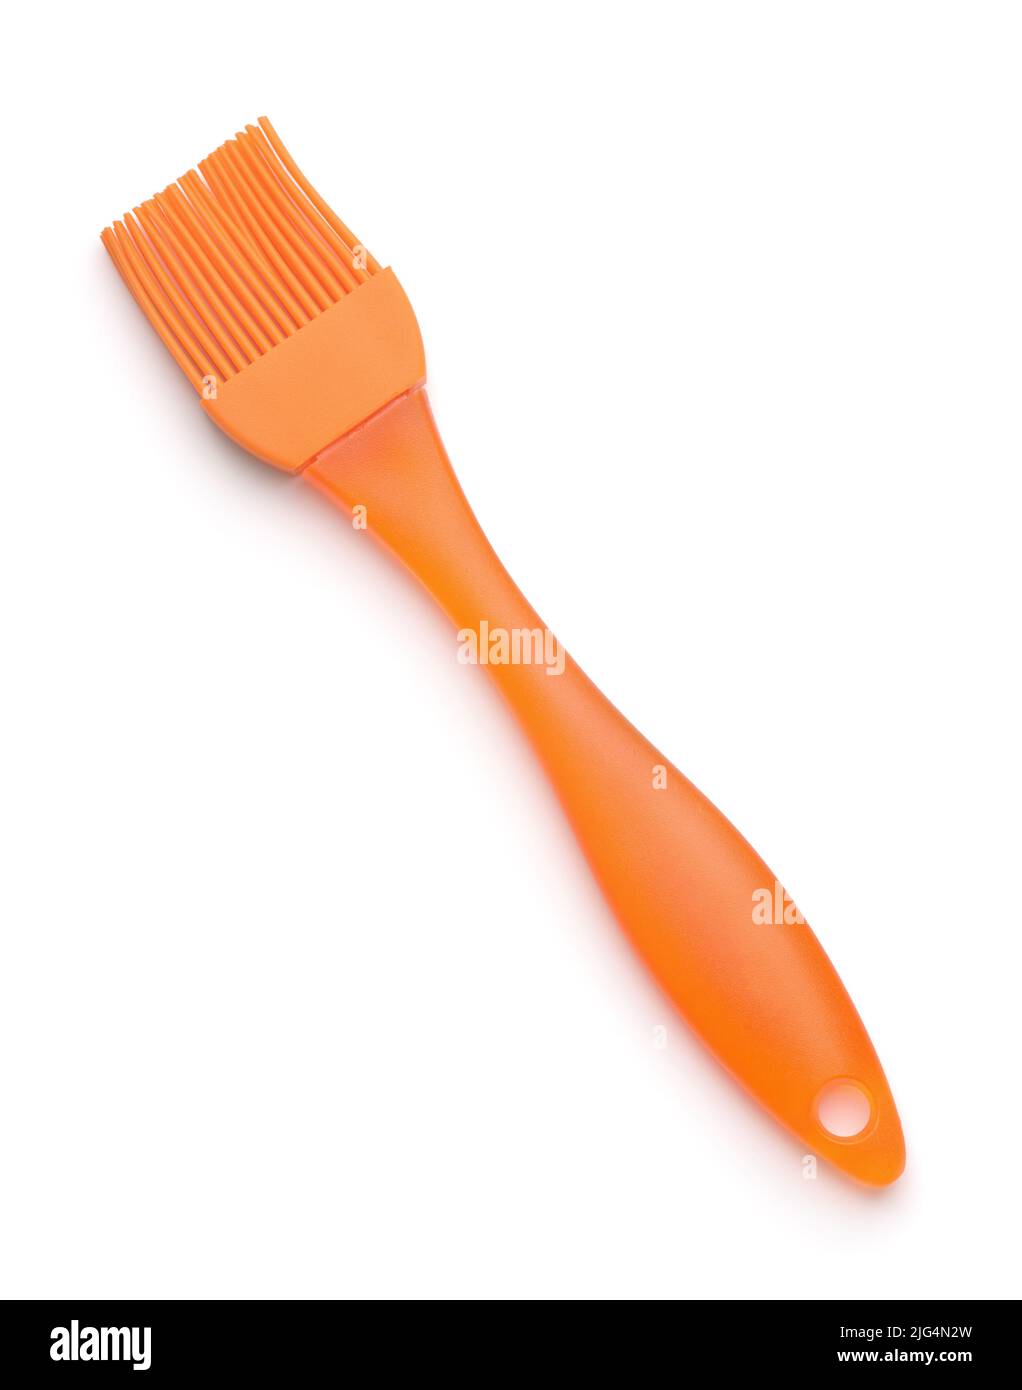 Orange kitchen silicone oil basting brush isolated on white Stock Photo